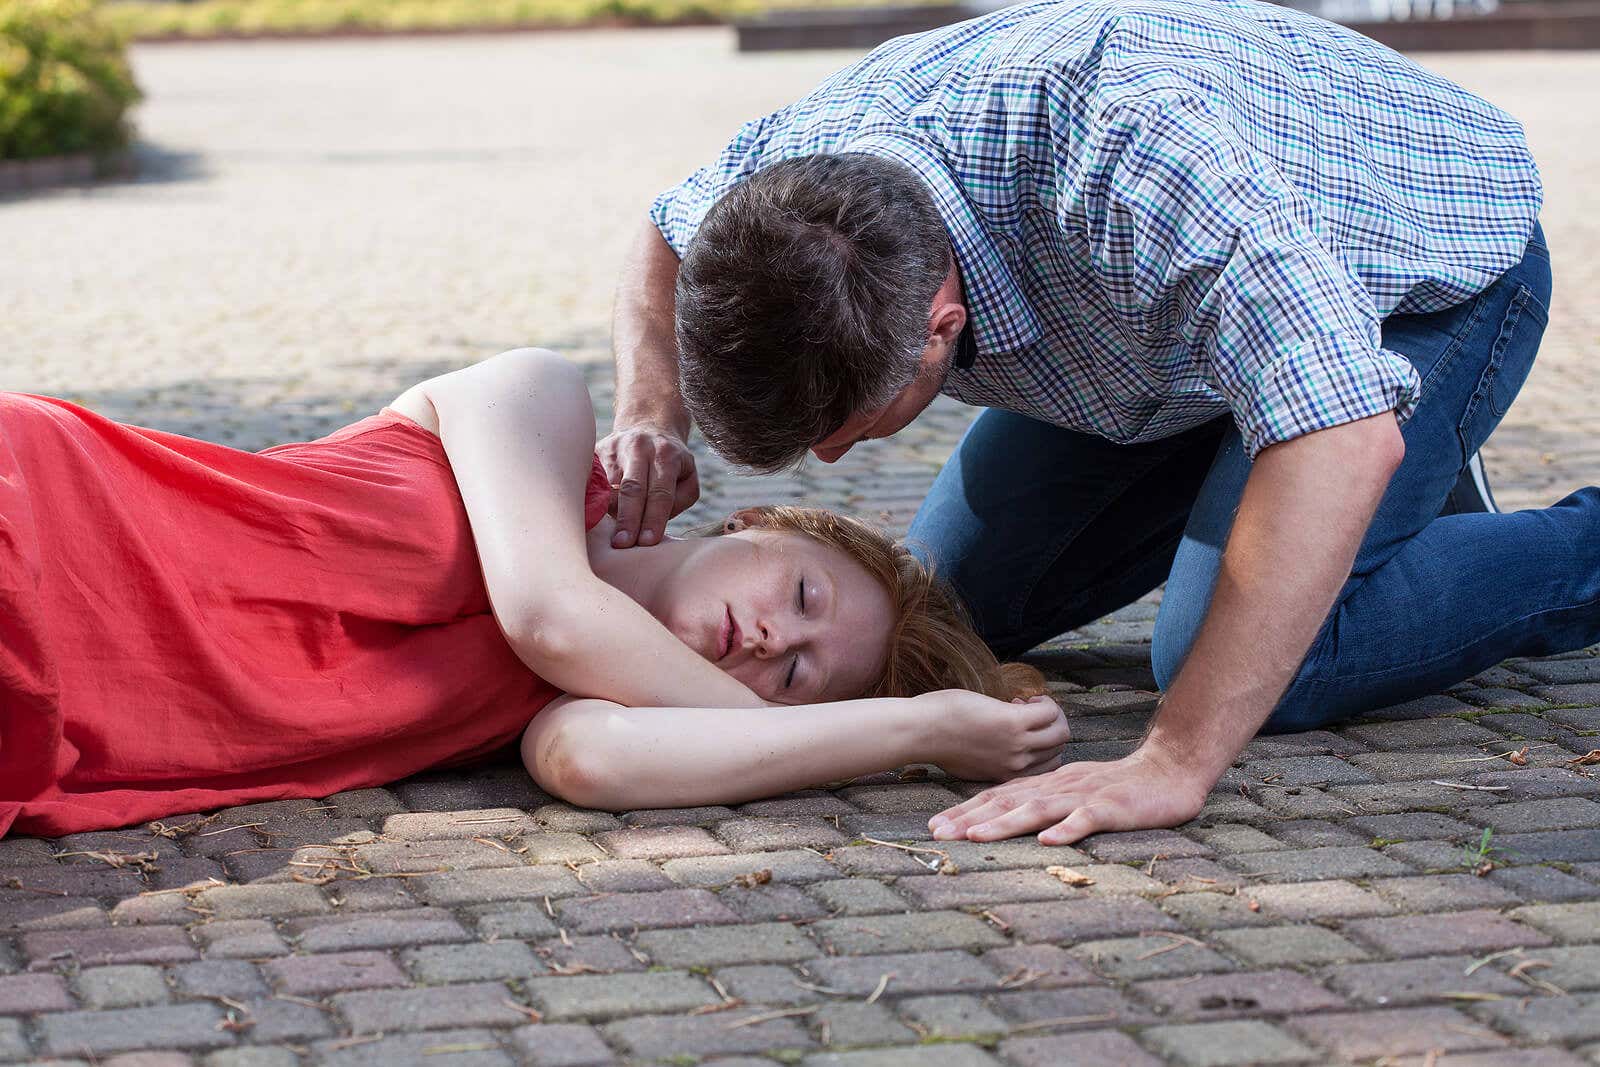 Hombre comprobando pulso de la chica desmayada en la calle.